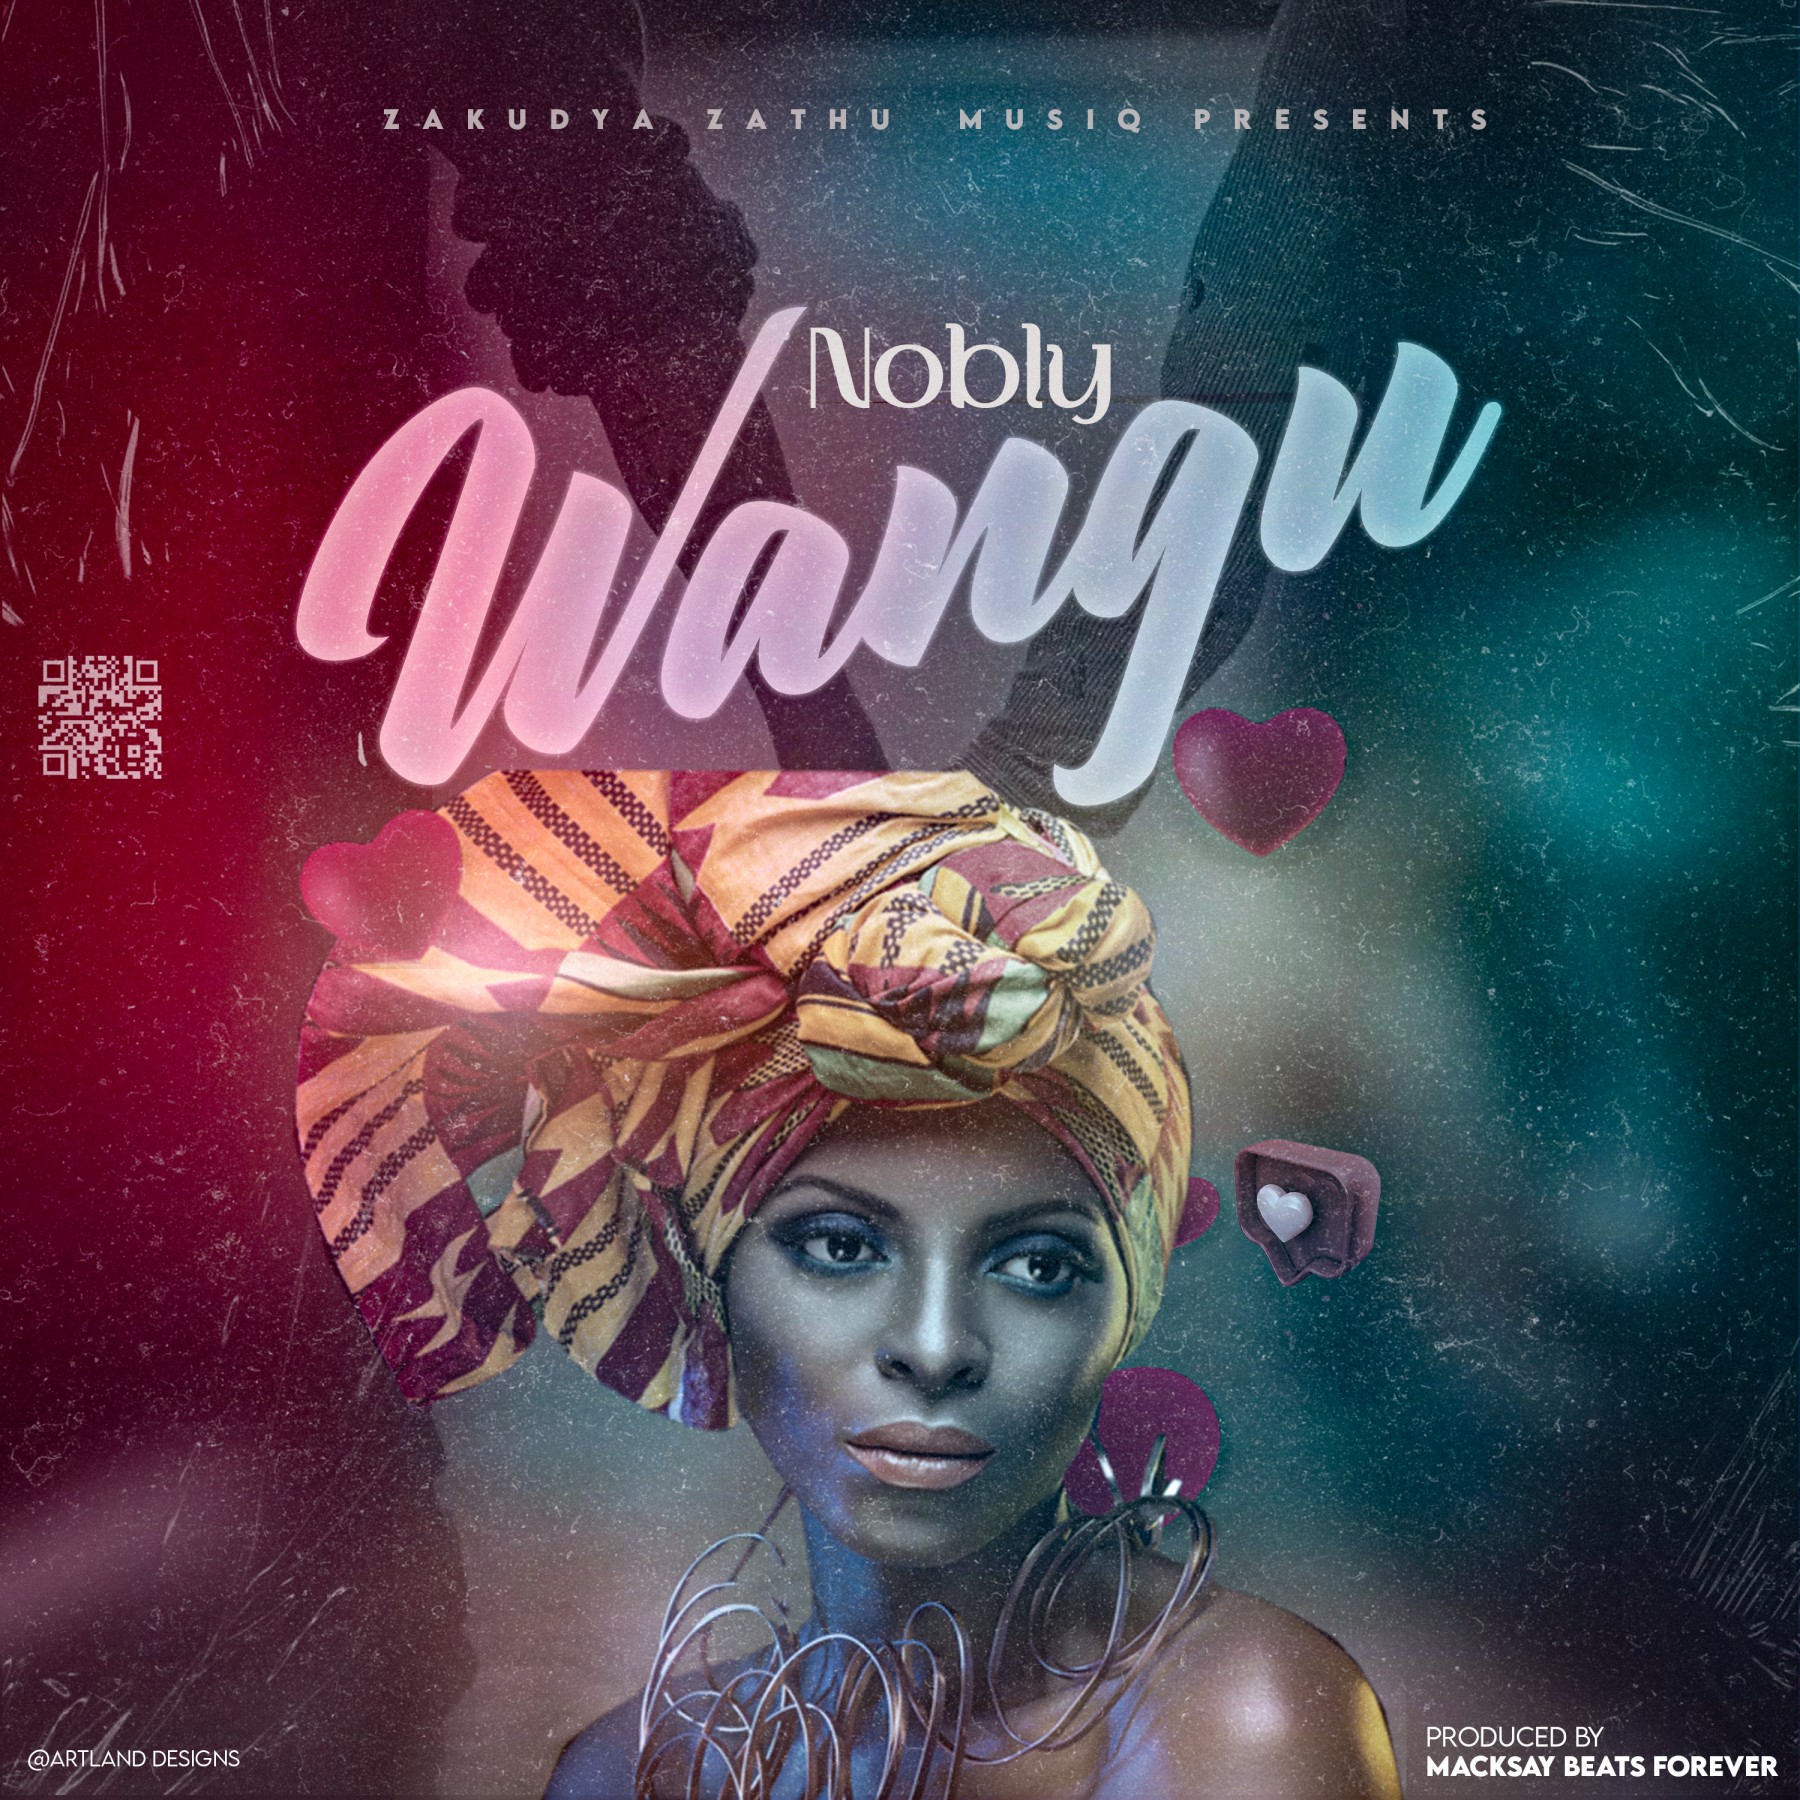 Nobly_Wangu-produced-by-Macksay-beats-@MBF-Music-Lab